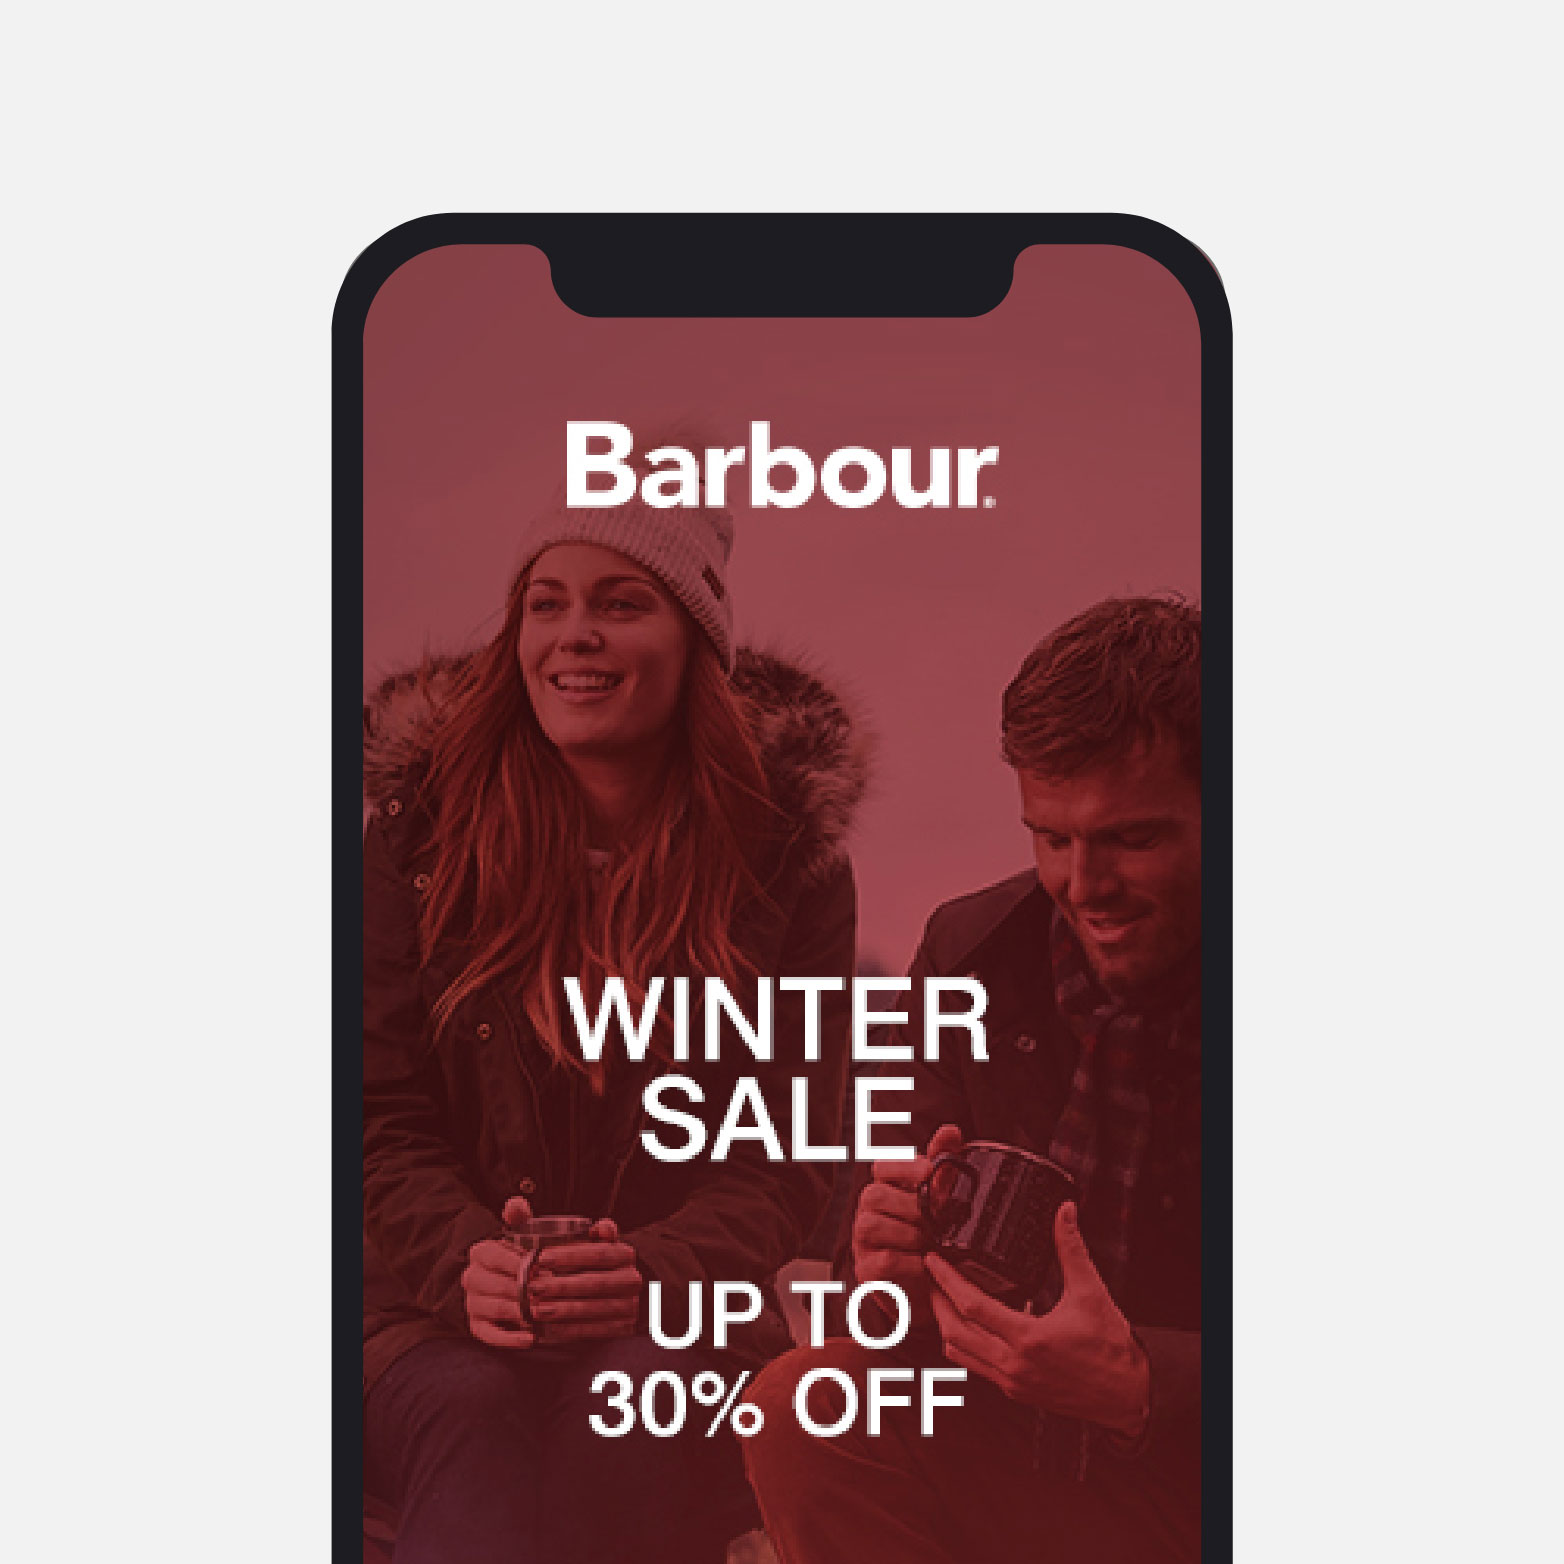 Barbour advert